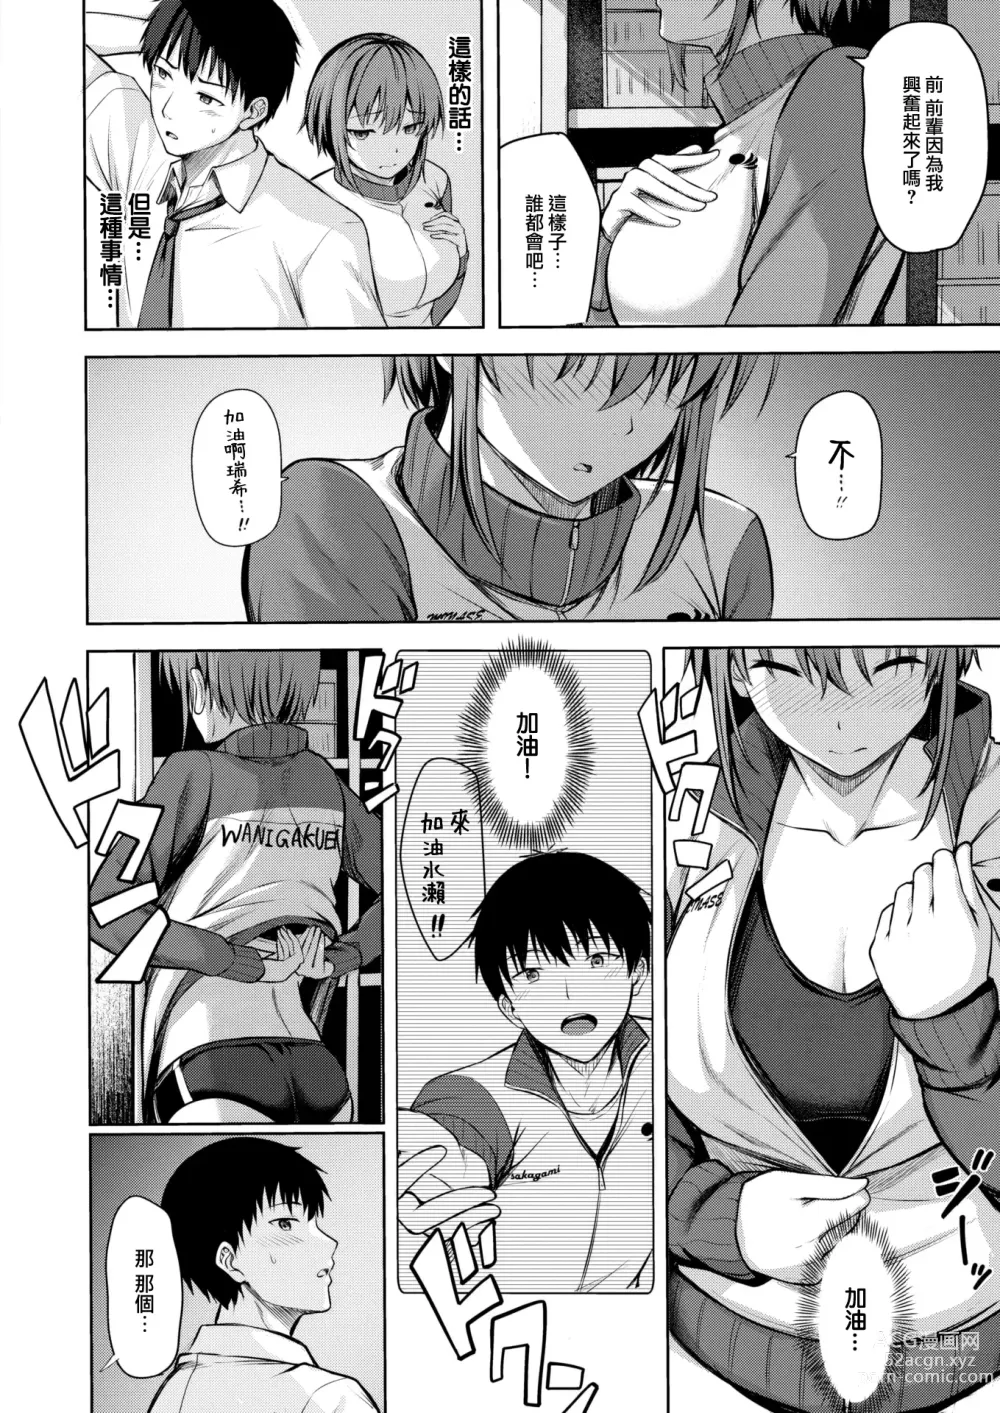 Page 9 of manga Start line